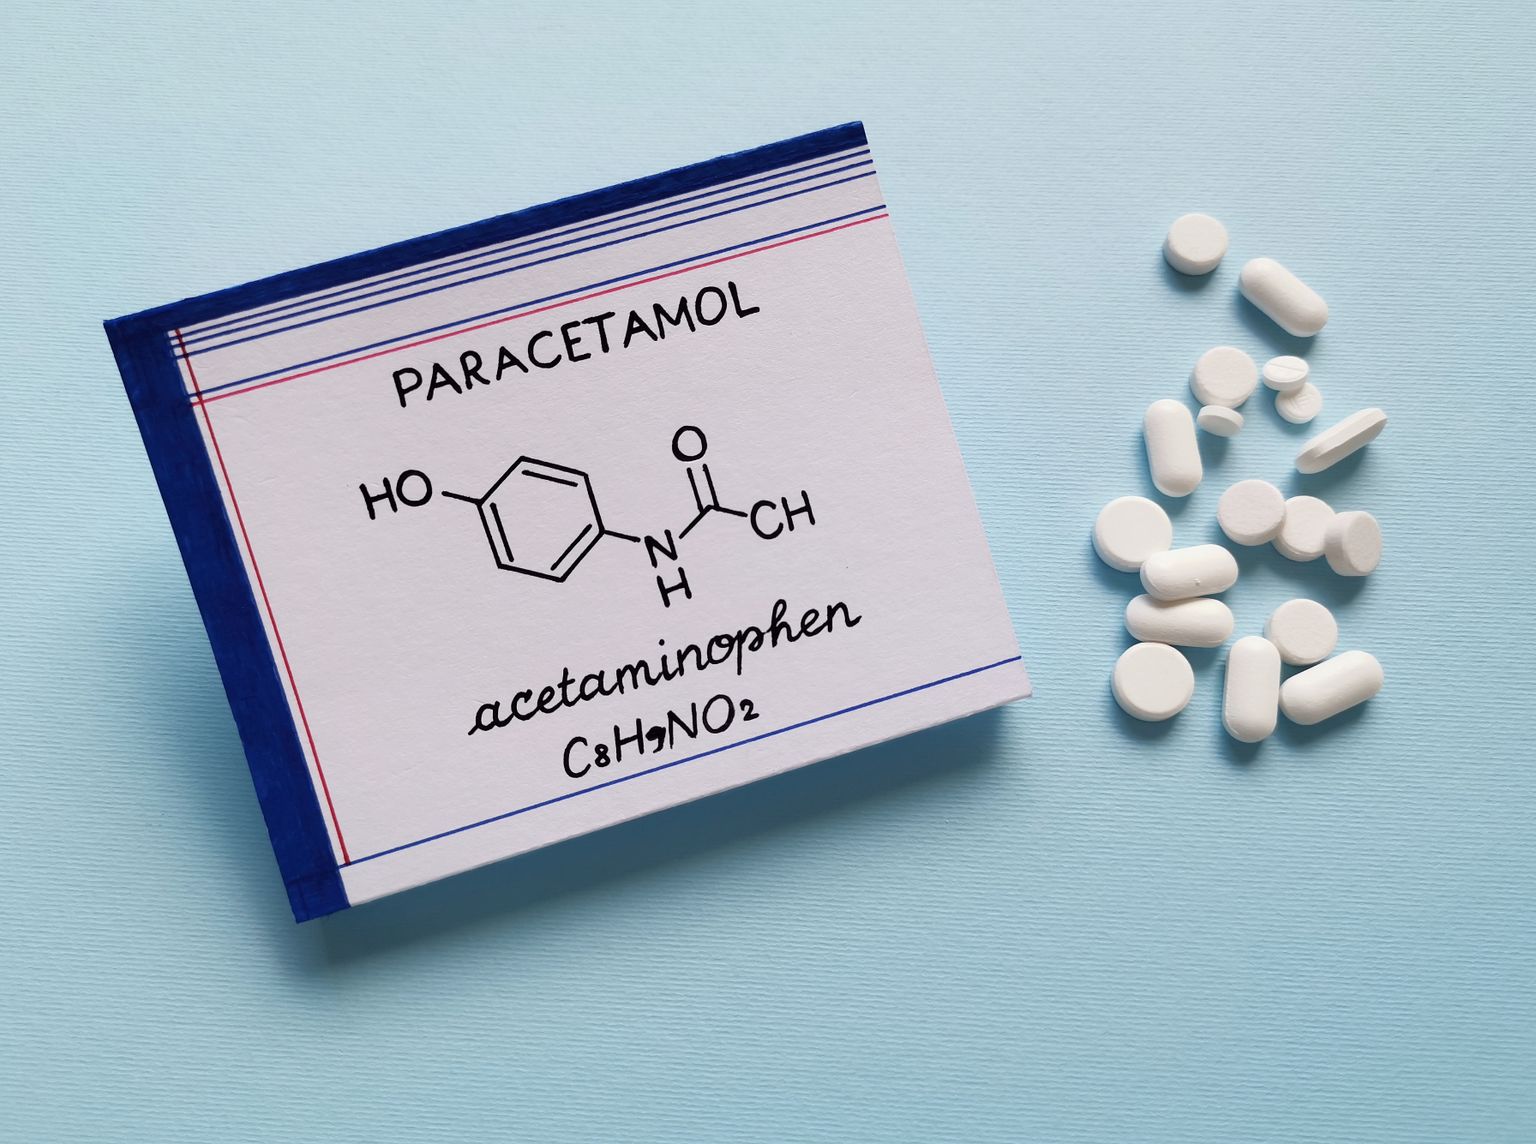 Formula chimica strutturale della molecola di acetaminofene con pastiglie e compresse sullo sfondo. Il paracetamolo o acetaminofene è un farmaco usato per trattare il dolore e la febbre ed è un leggero analgesico.